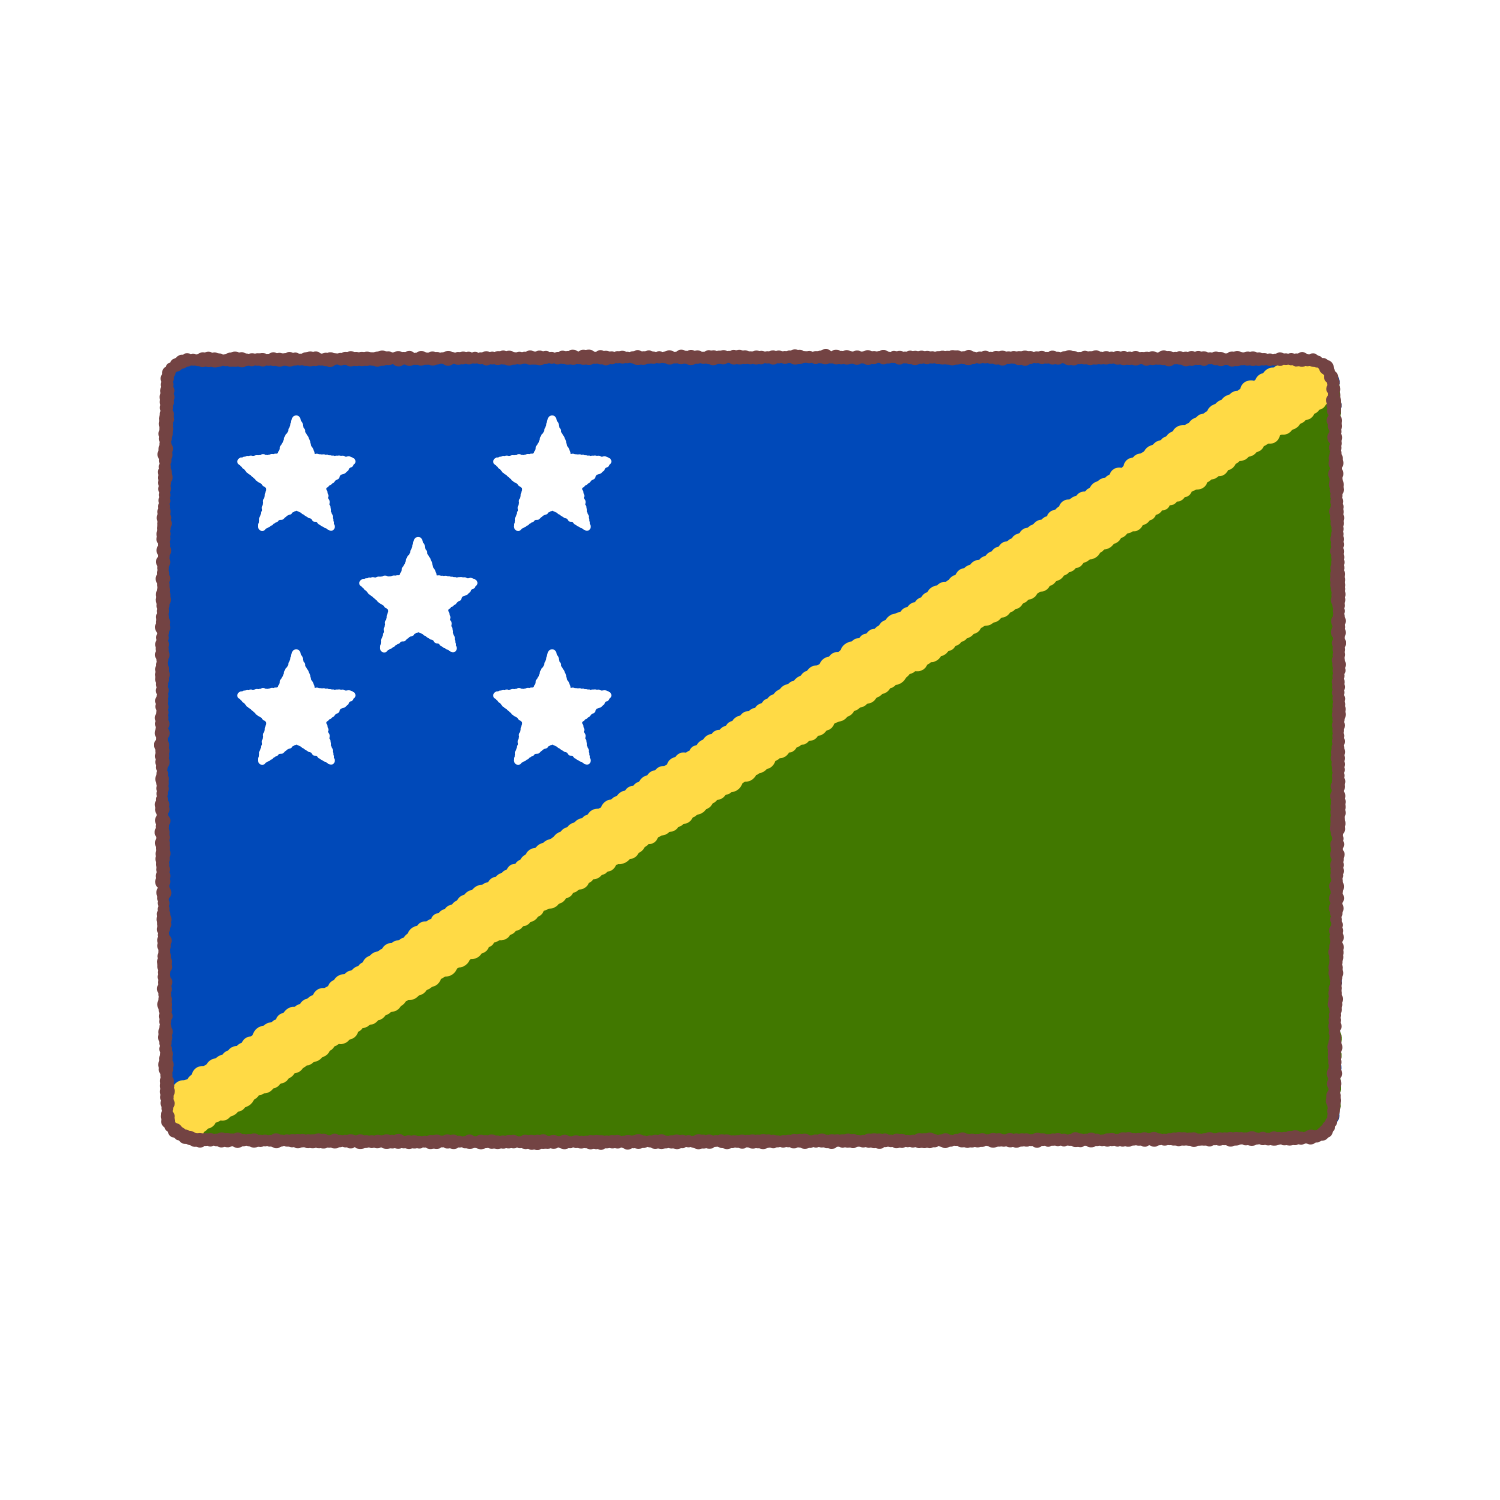 ソロモン諸島（Solomon island）国旗のイラスト